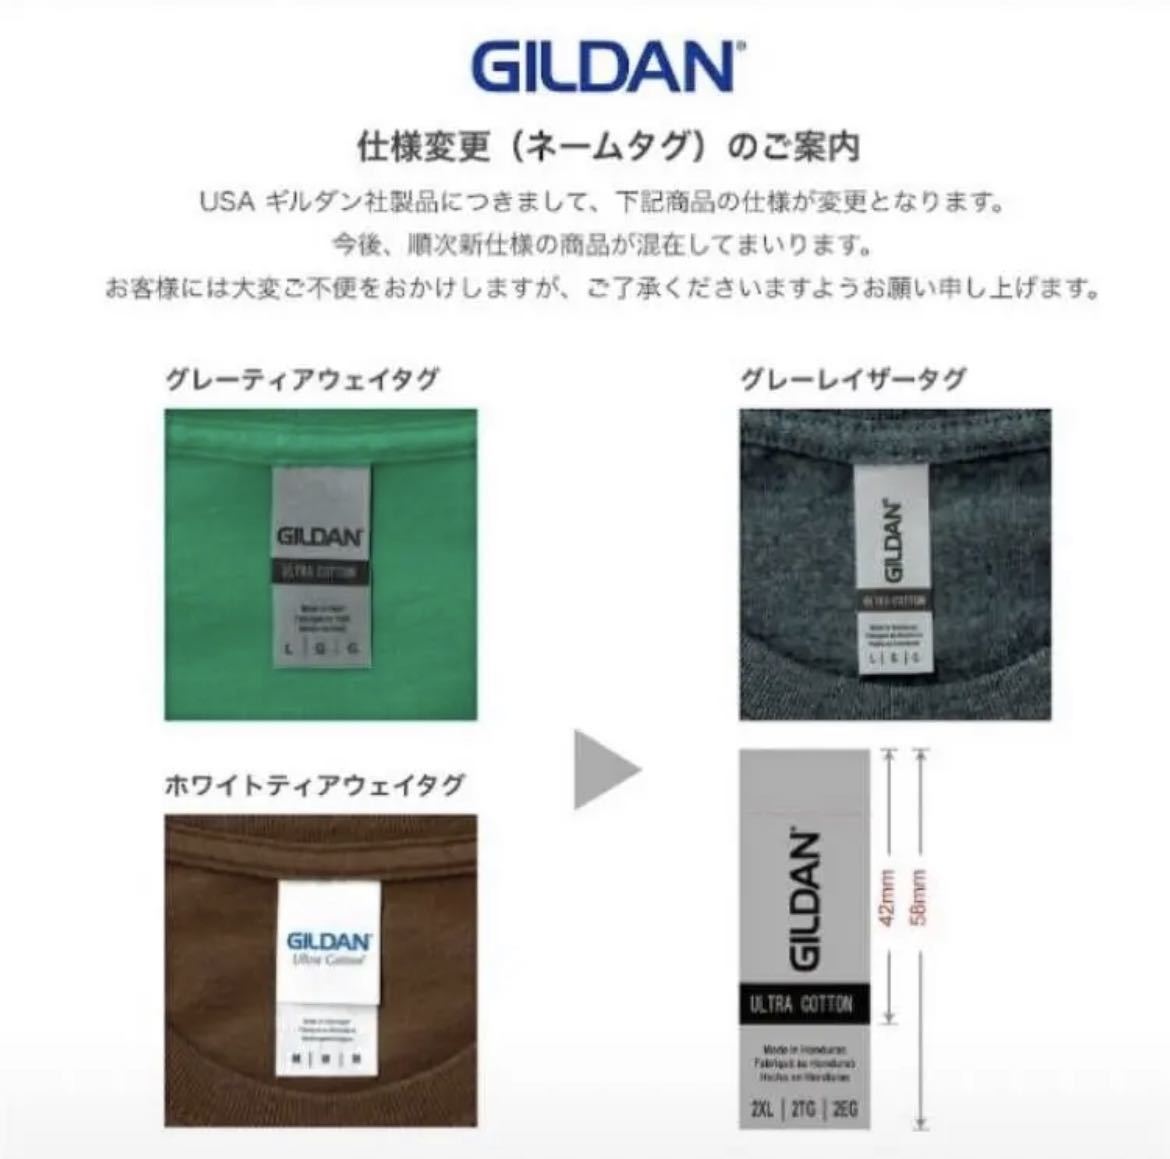 新品未使用 GILDAN ギルダン 8oz プルオーバー 無地かぶりパーカー 裏起毛 グラファイトヘザー Sサイズ ビッグシルエット フーディー